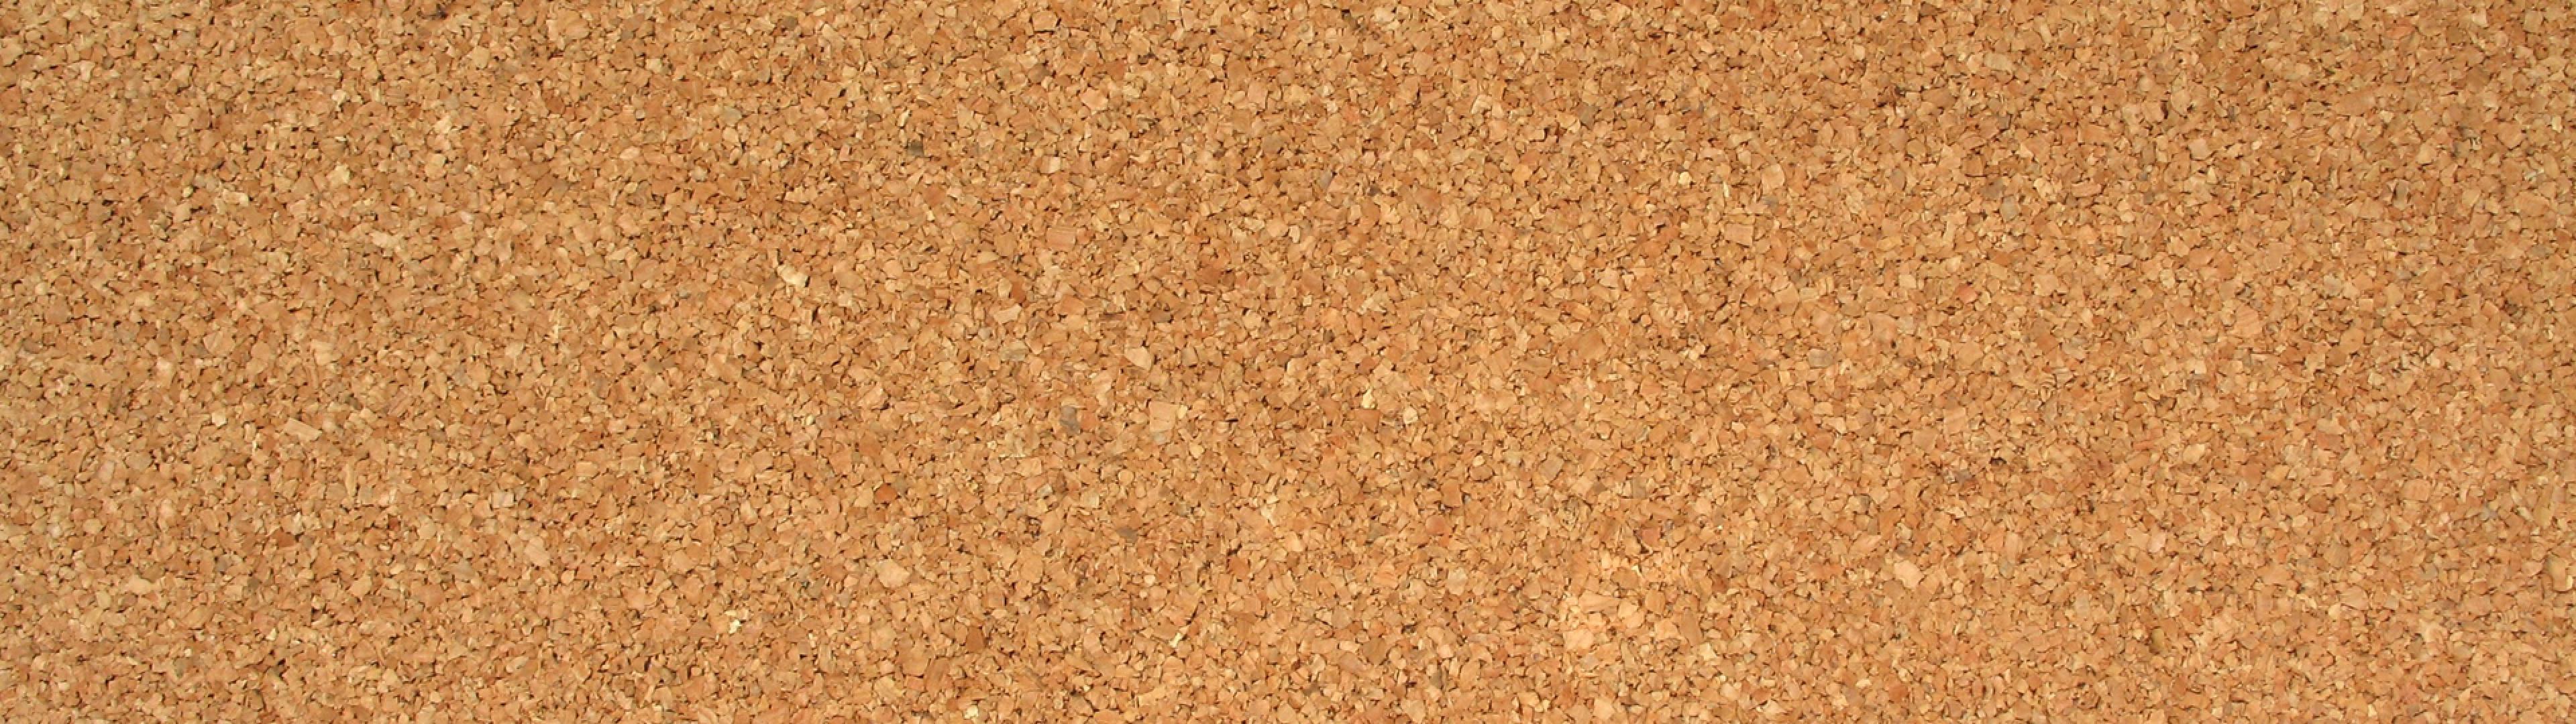 papel tapiz de panel de corcho,corcho,marrón,beige,arena,suelo